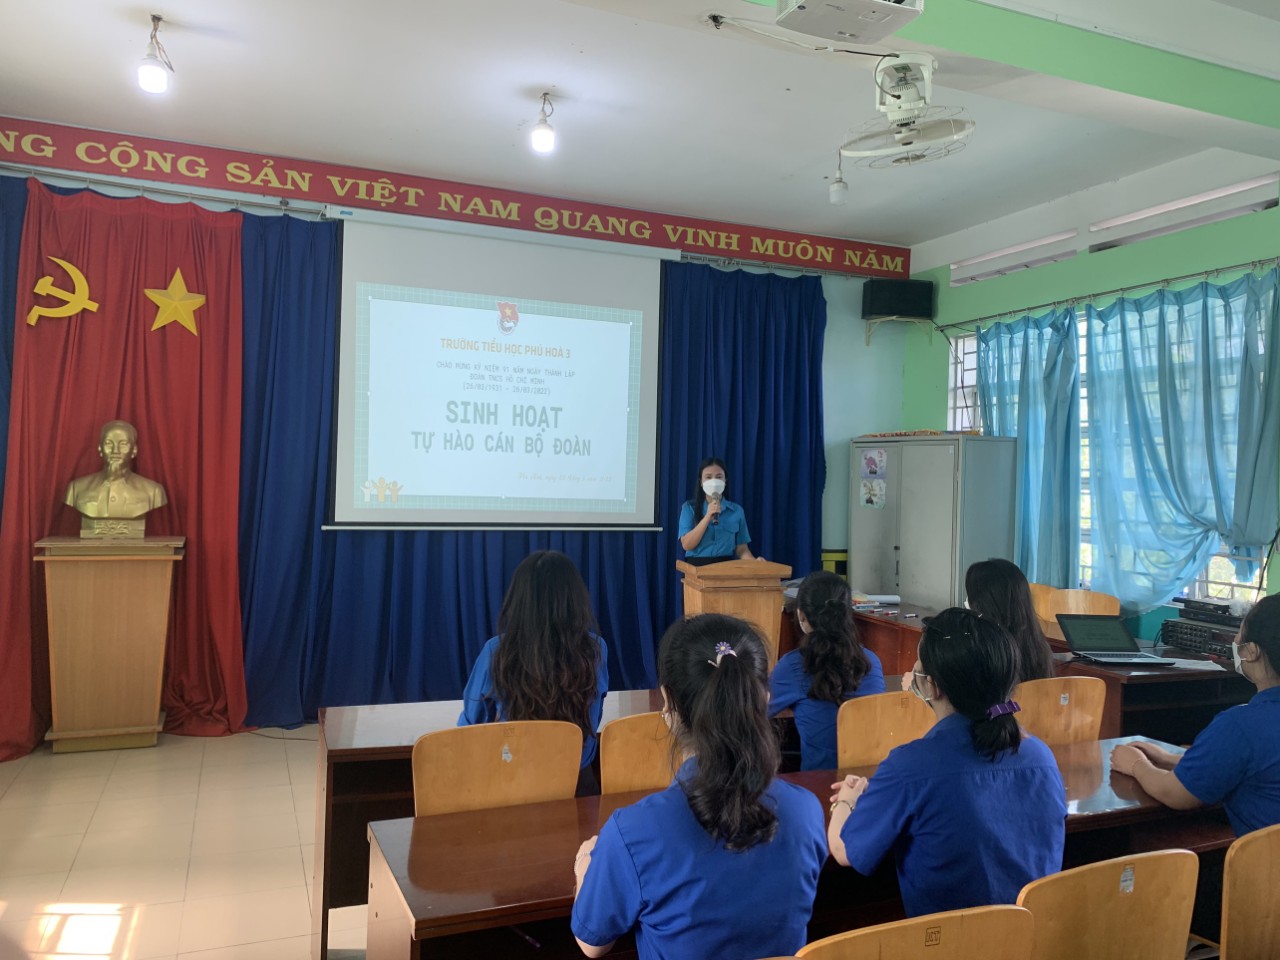 Trường Tiểu học Phú Hòa 3 tổ chức kỷ niệm 91 năm ngày thành lập Đoàn TNCS Hồ Chí Minh (26/03/1931 - 26/03/2022) và sinh hoạt " Tự Hào Cán Bộ Đoàn"